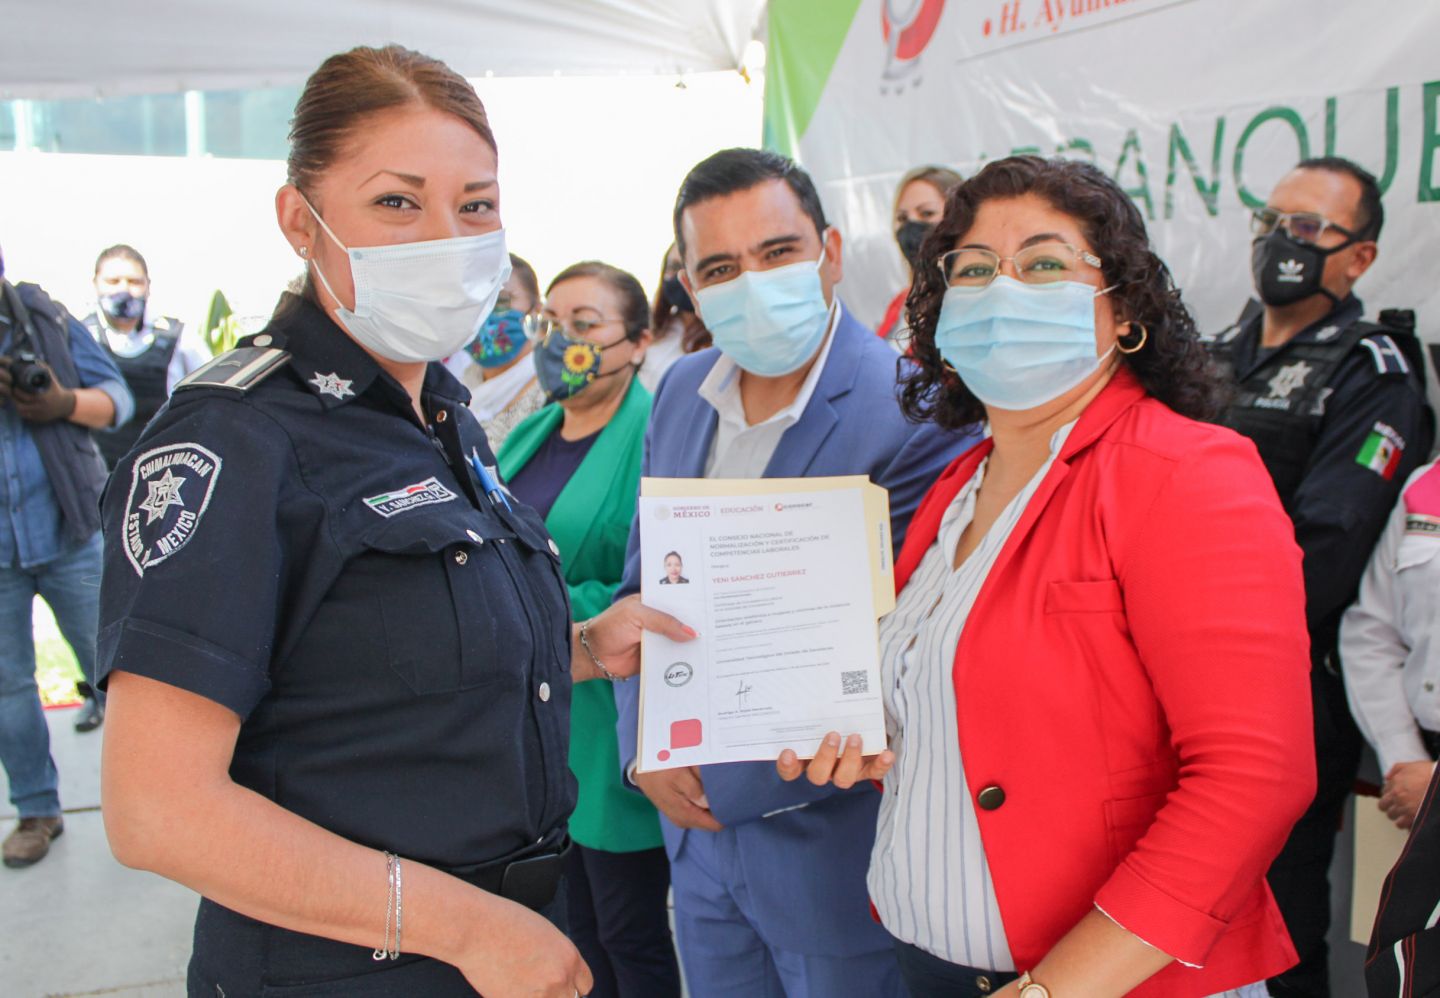 Arranca campaña de prevención y erradicación del feminicidio y desaparición de mujeres en Chimalhuacán